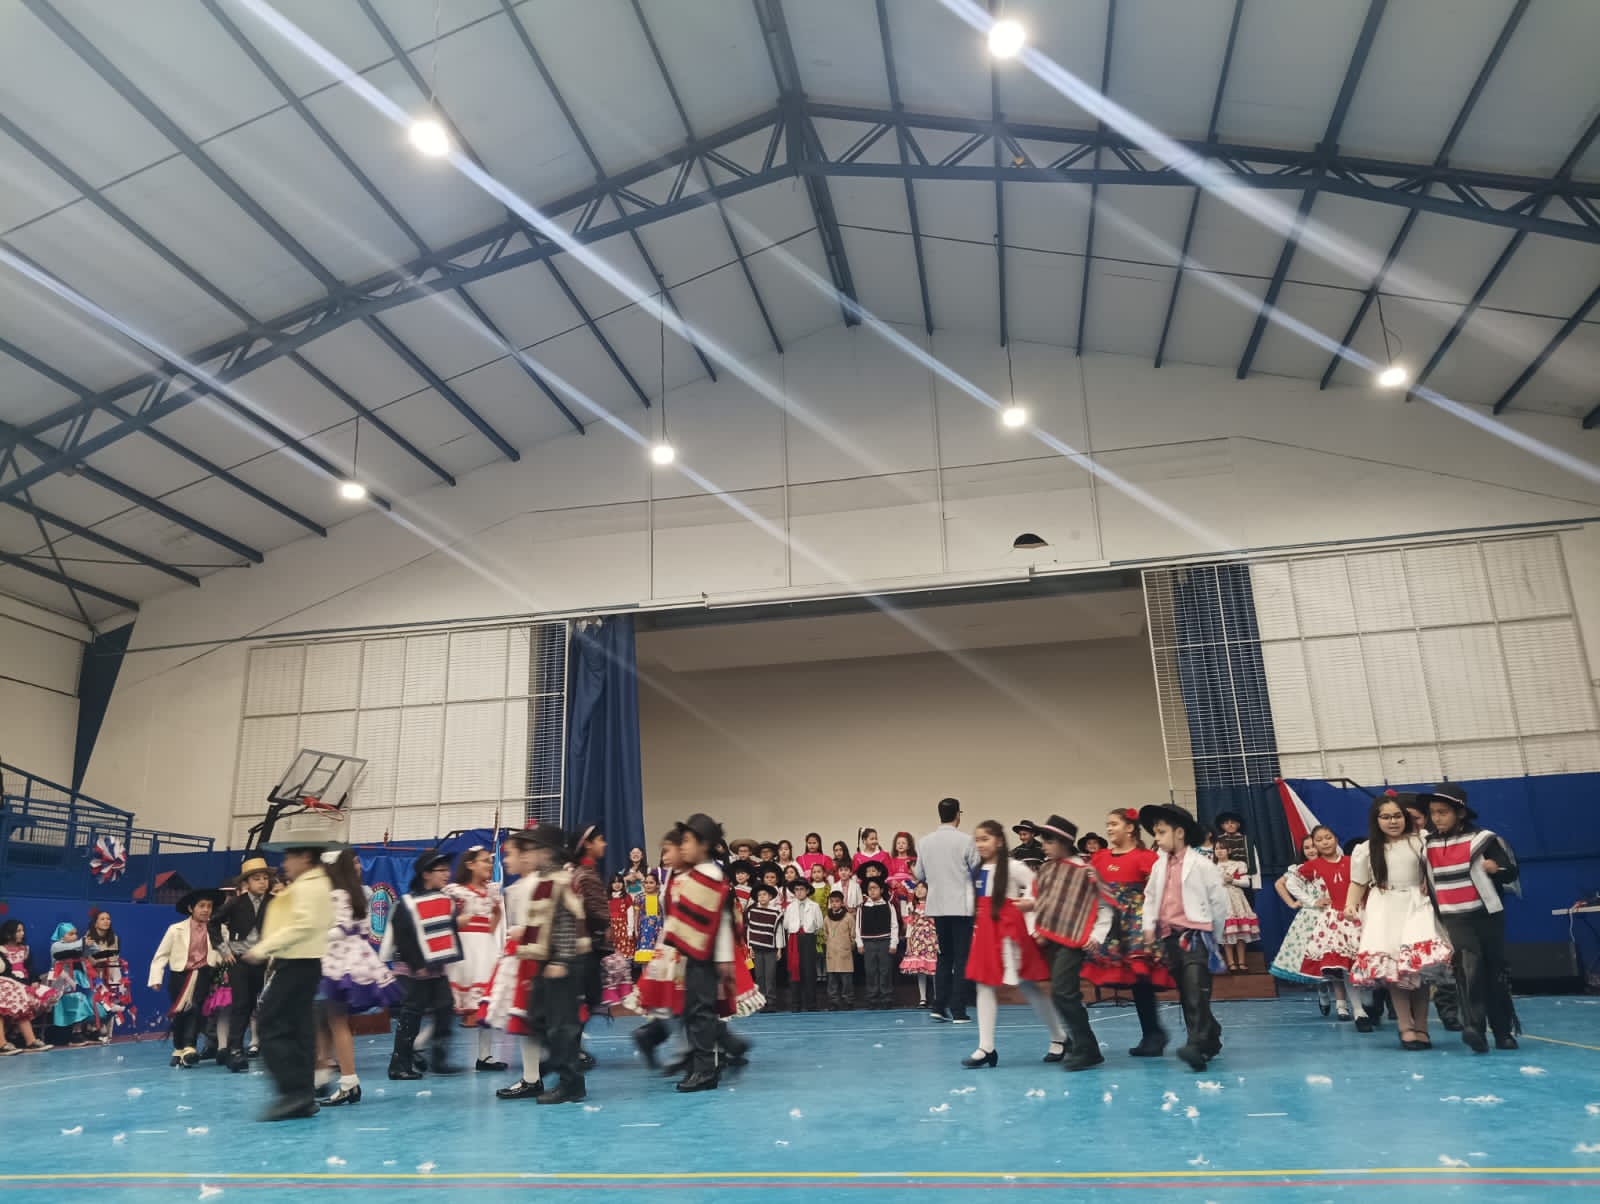 Estudiantes de primer ciclo realizando baile tradicional en acto de fiestas patrias